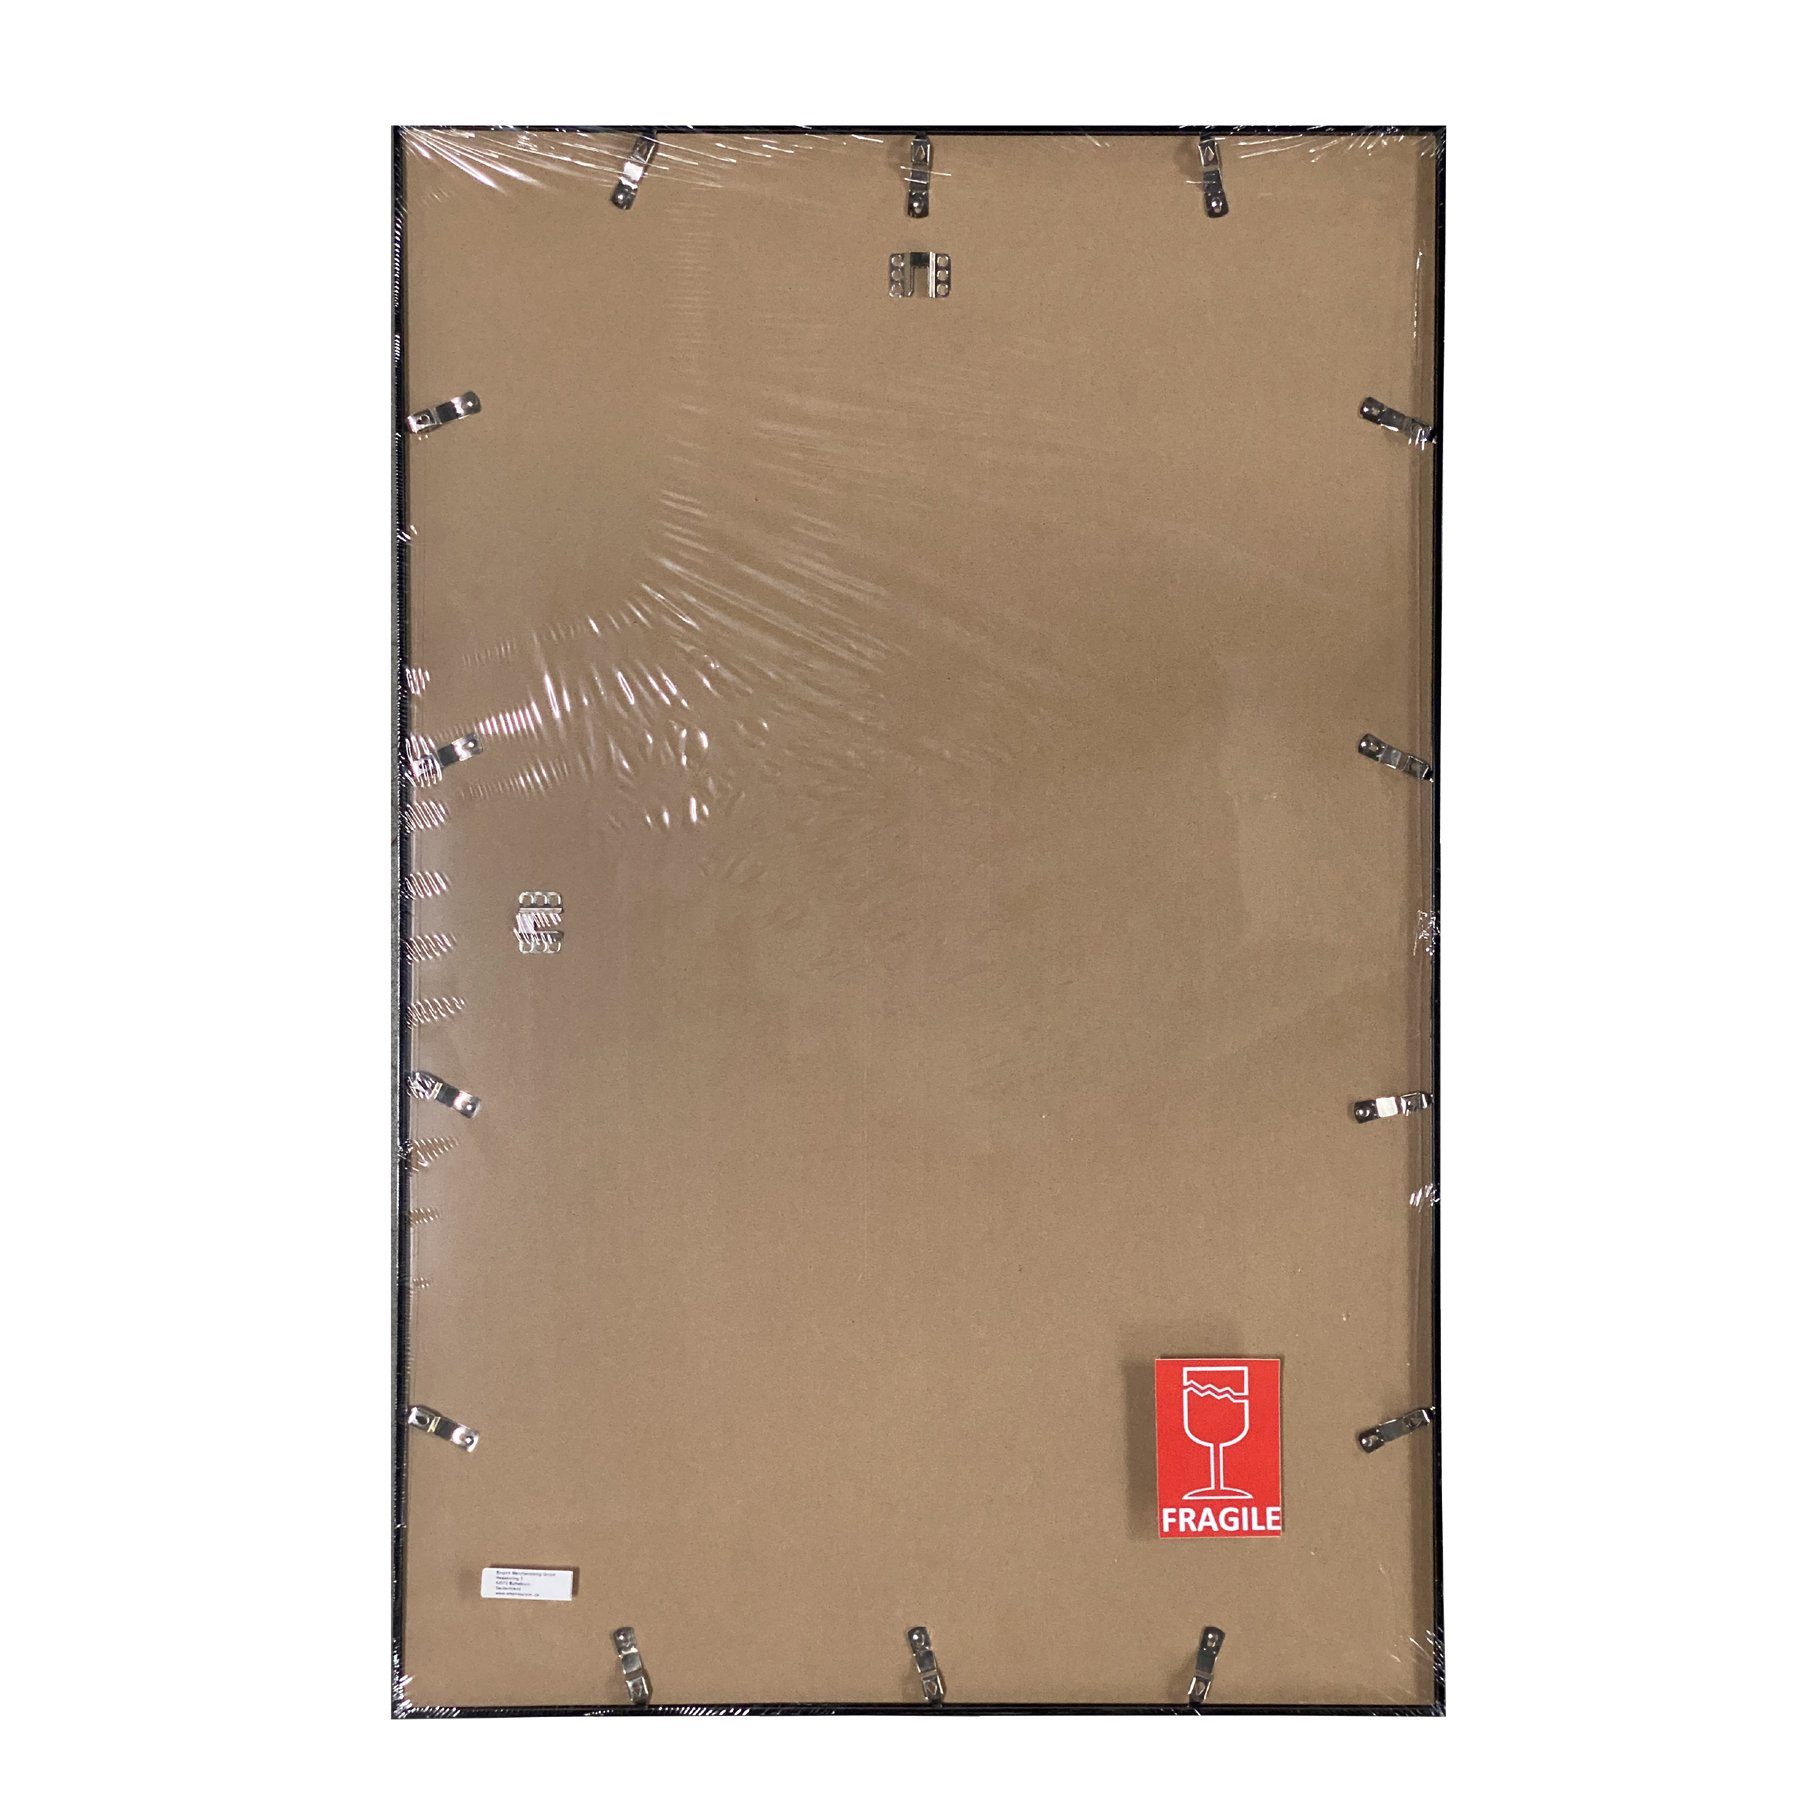 Farbe Wechselrahmen Profil: Rahmen Posterrahmen mit Shinsuke® 15mm Acryl-Scheibe Maxi-Poster Kunststoff grün 61x91,5cm, empireposter